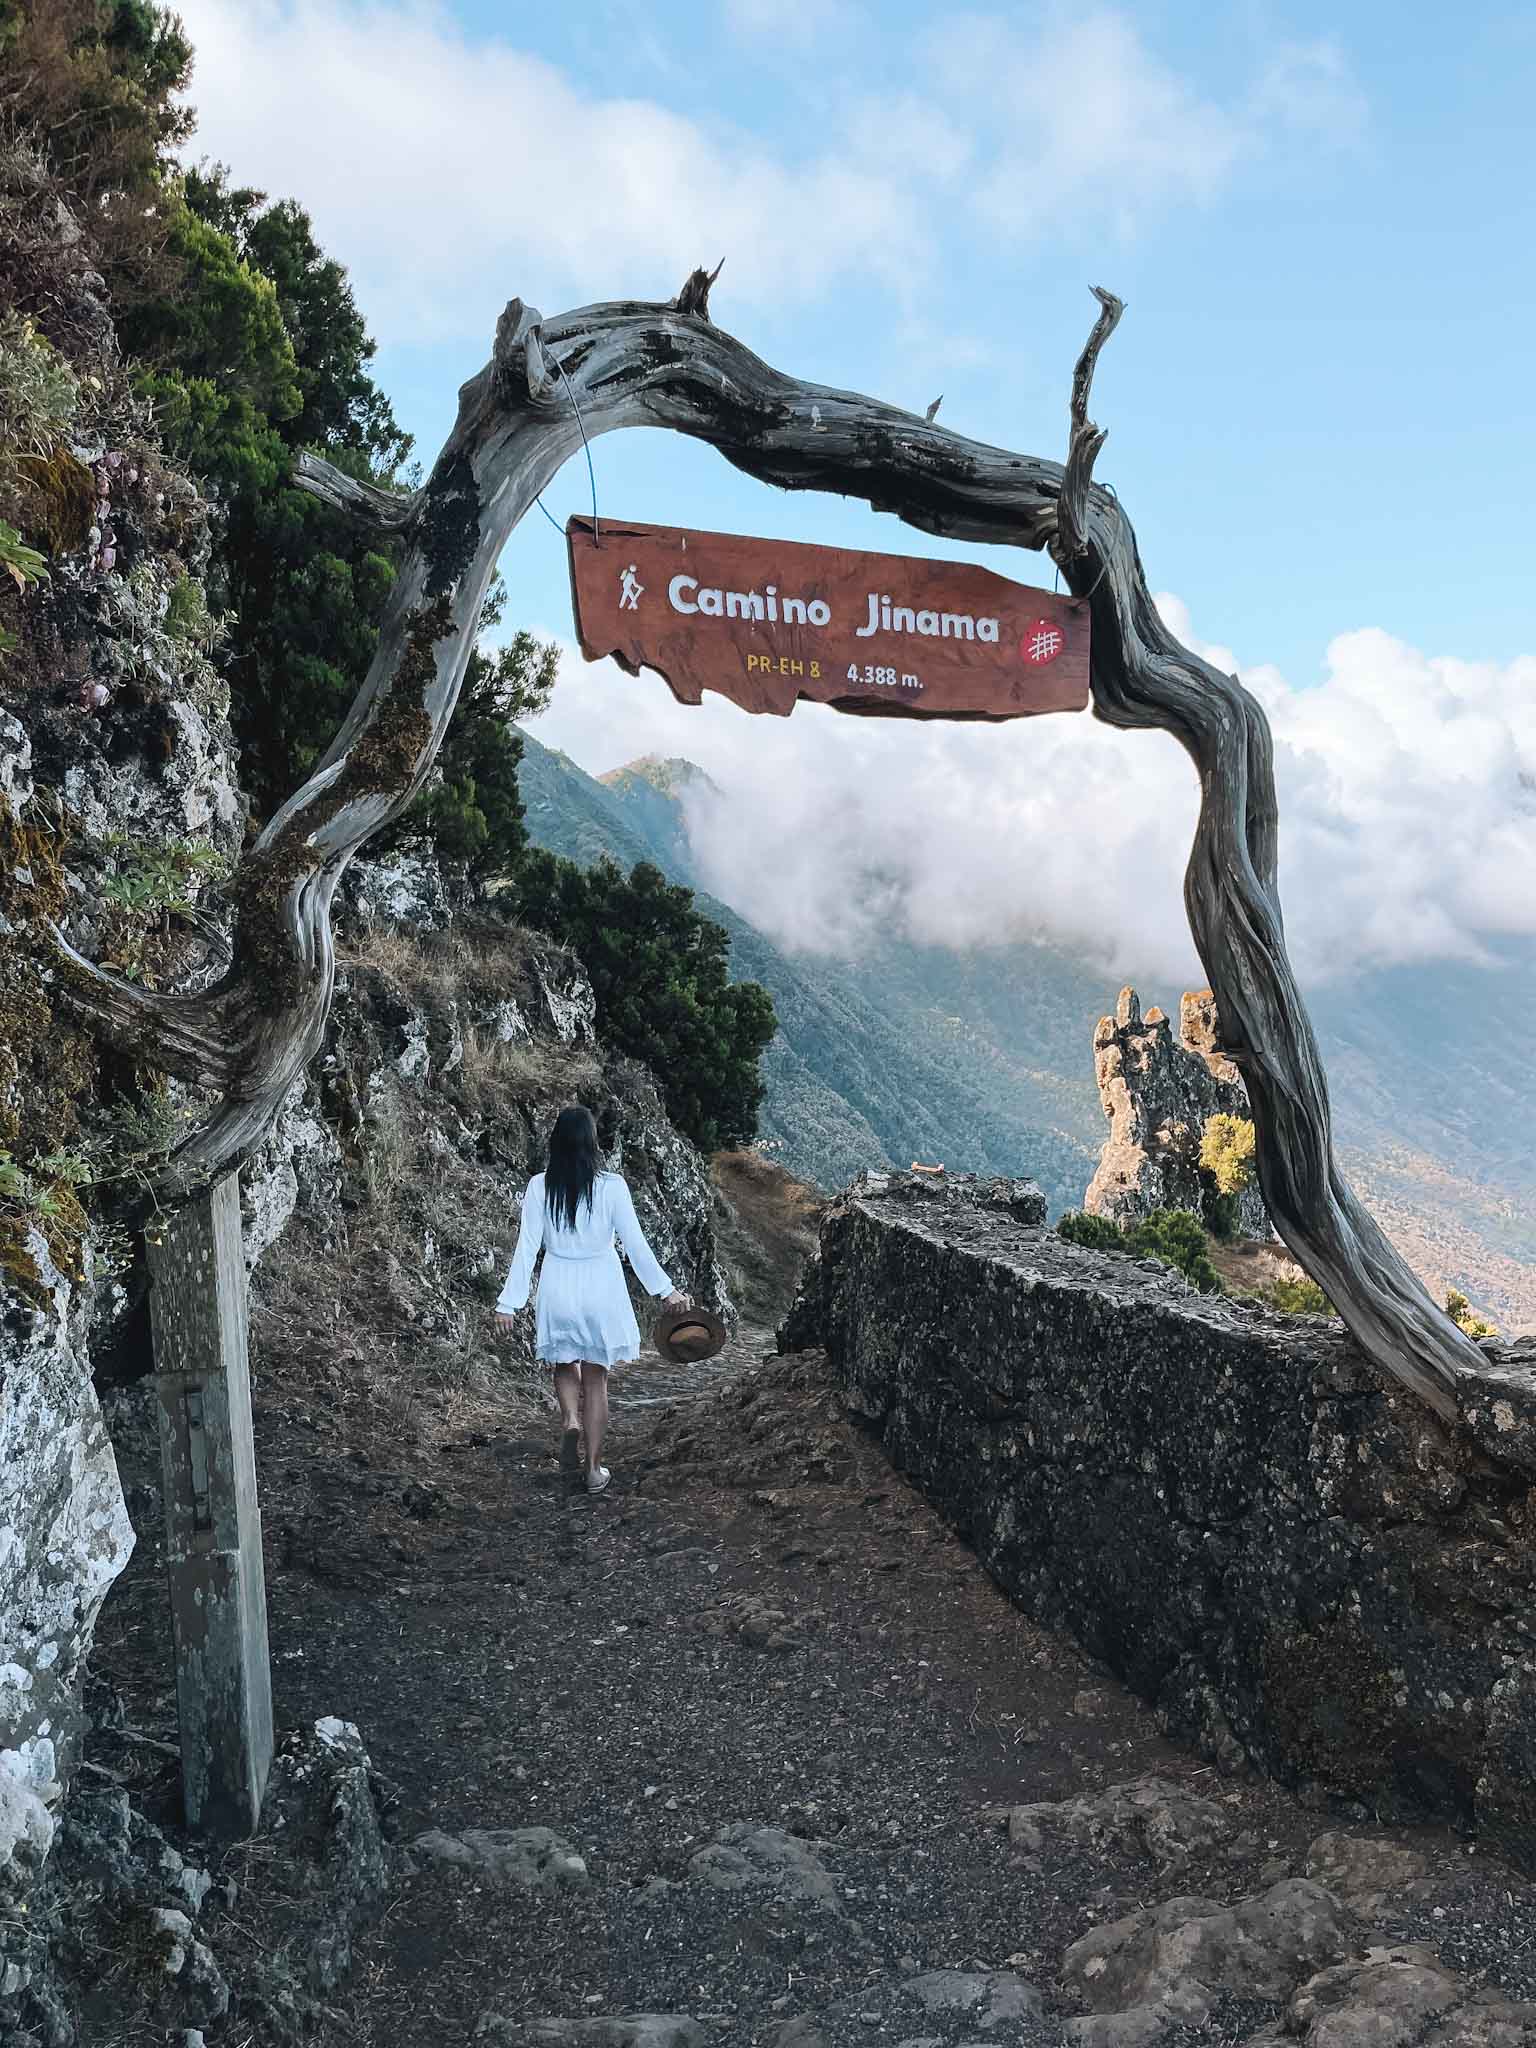 Best Instagram spots in El Hierro Canary Islands - Camino Jinama trail